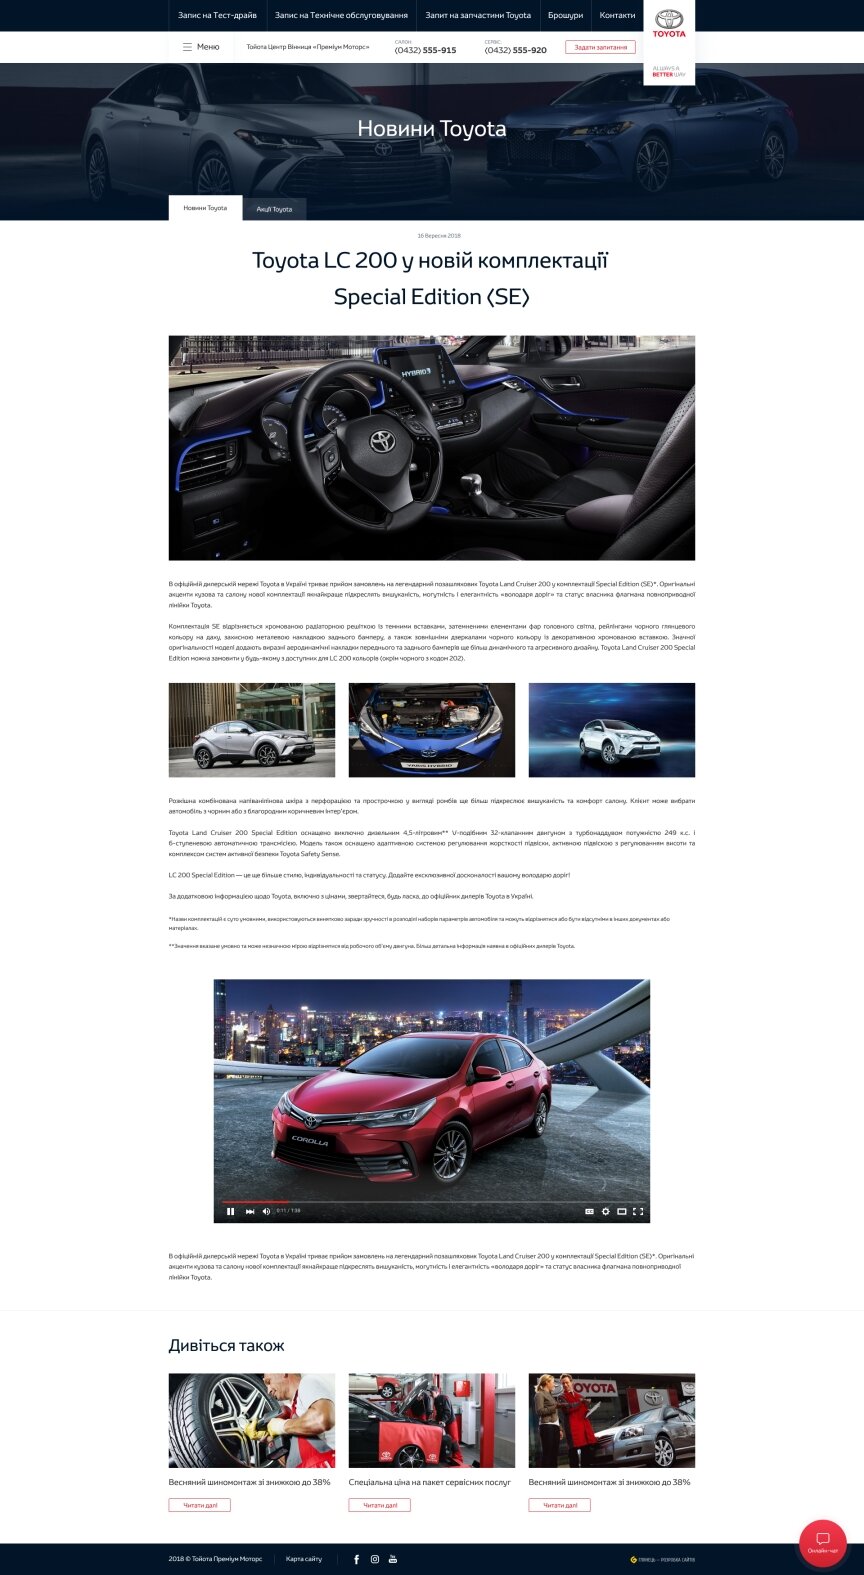 interior page design on the topic Motyw motoryzacyjny — Korporacyjna strona internetowa oficjalnego dealera Toyota Center Vinnytsia „Premium Motors” 67